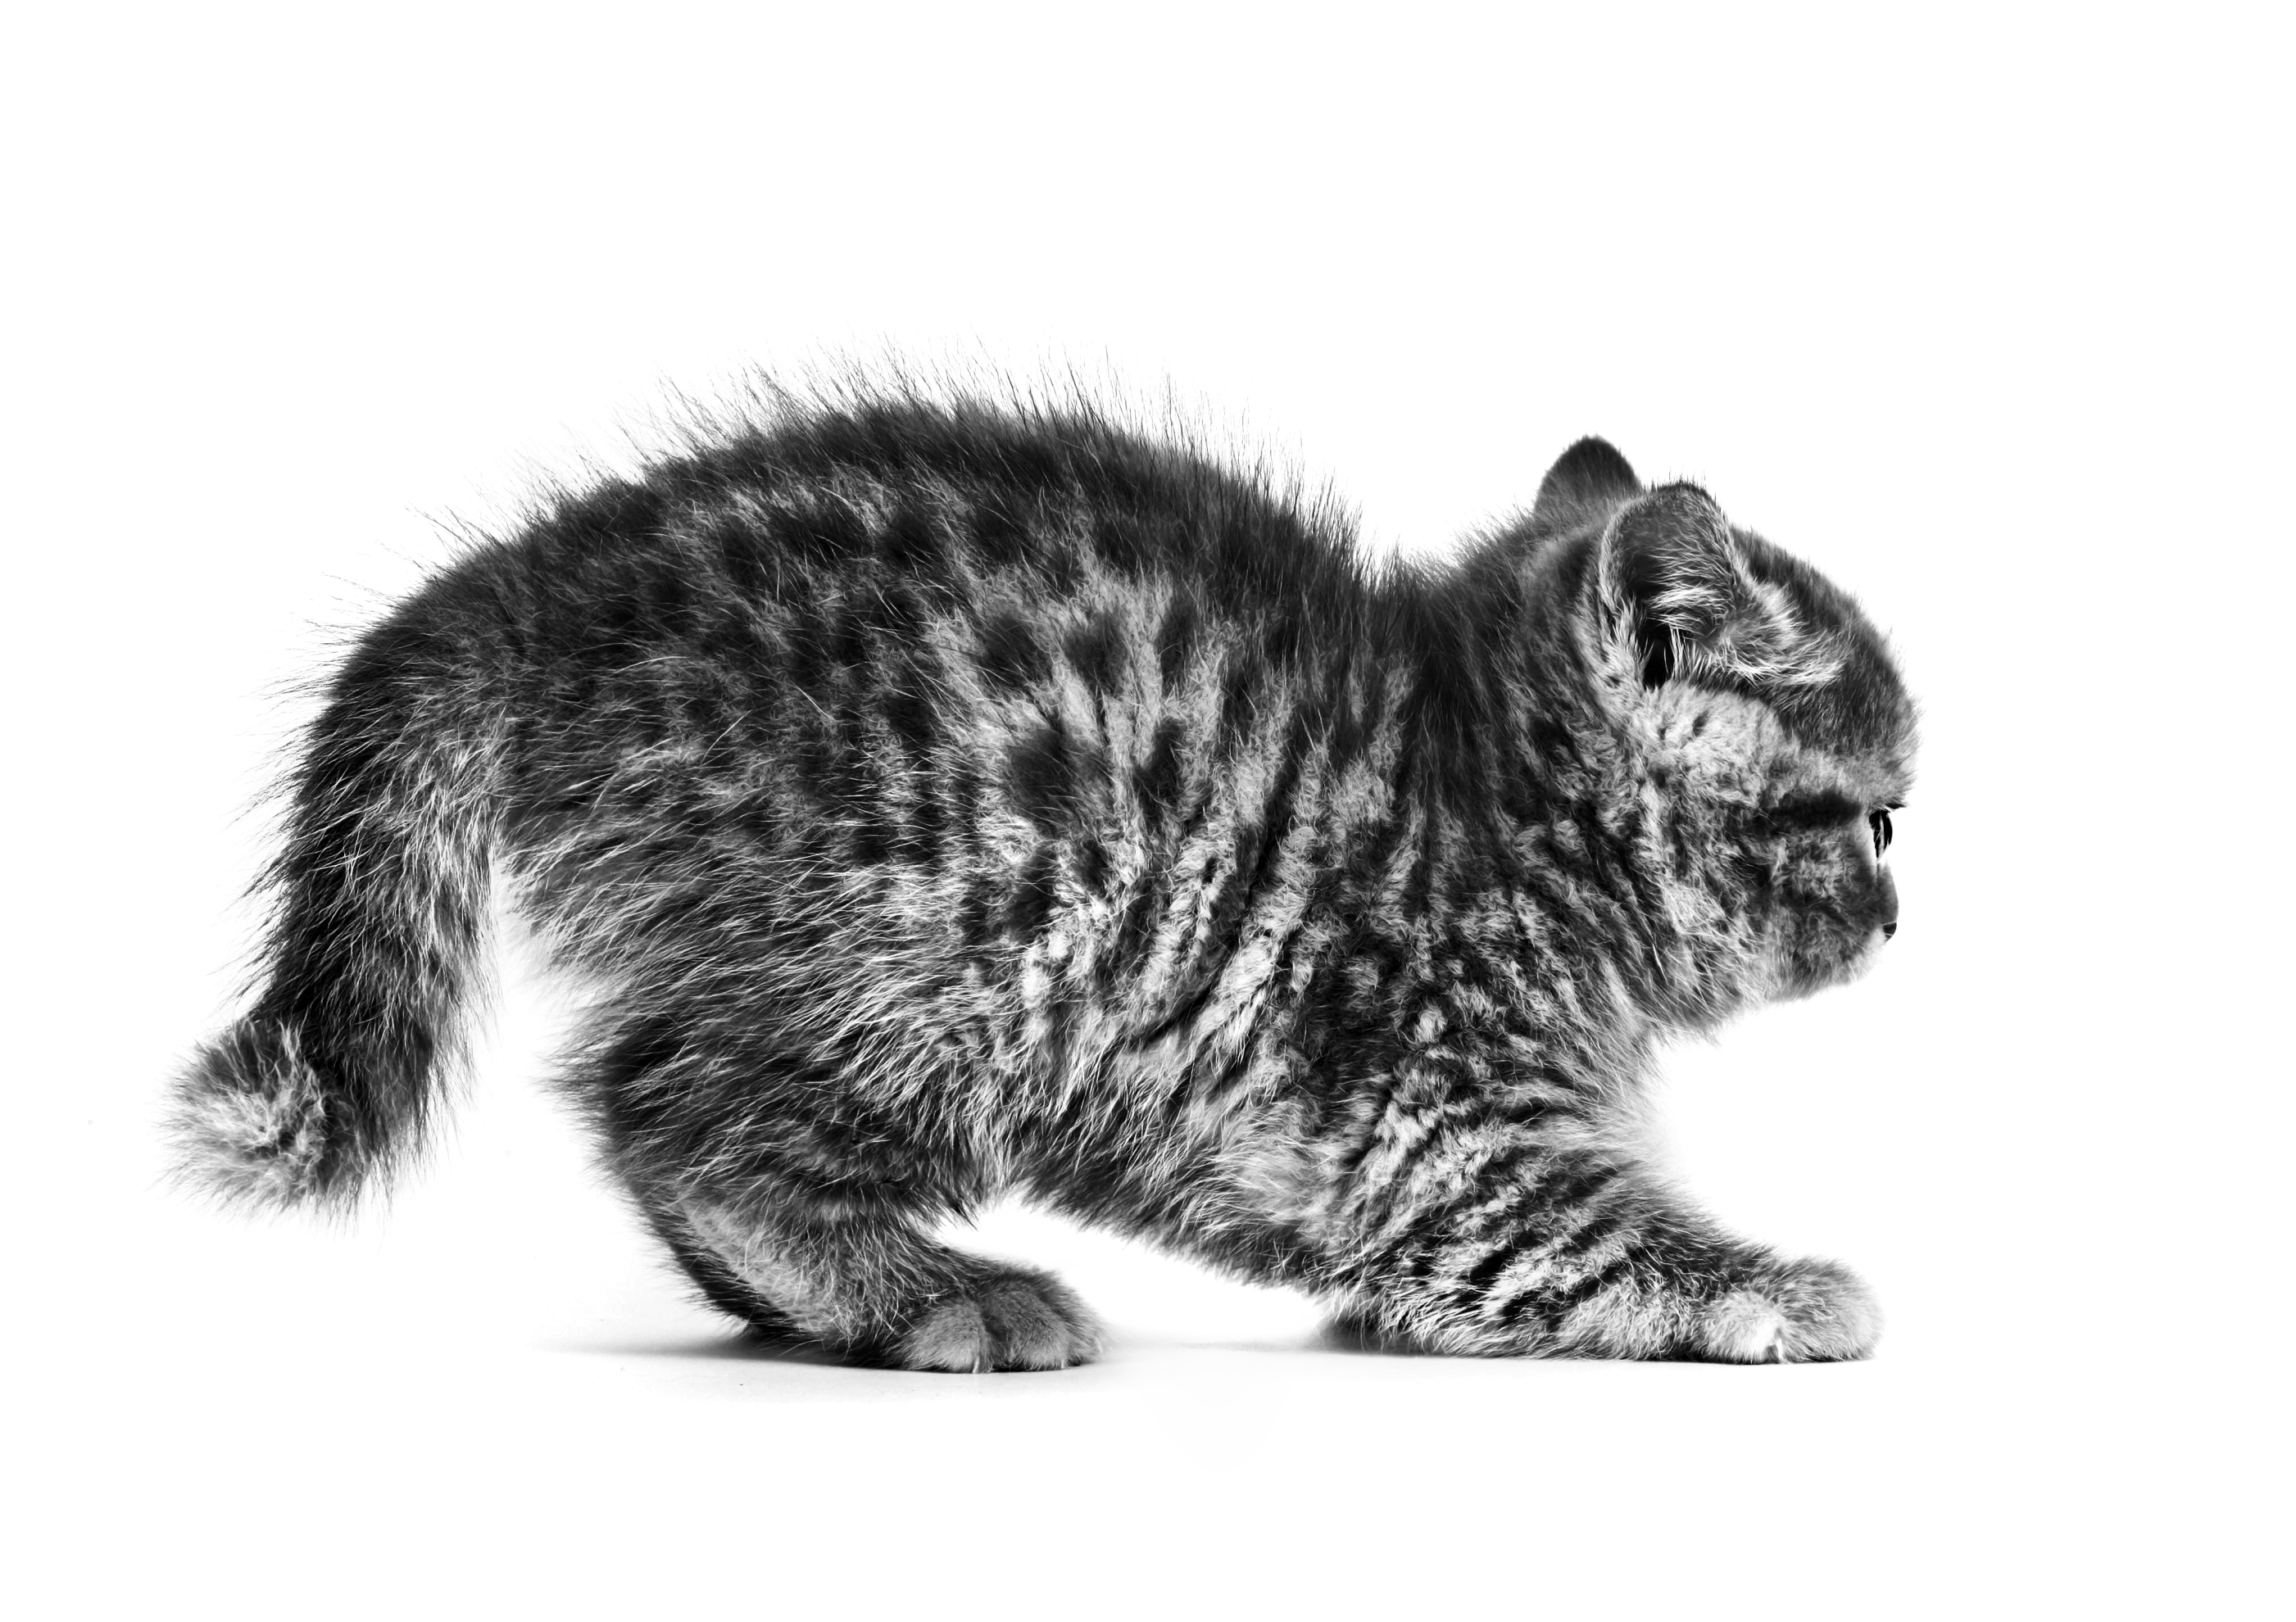 Gatito de British Shorthair, en blanco y negro sobre un fondo blanco